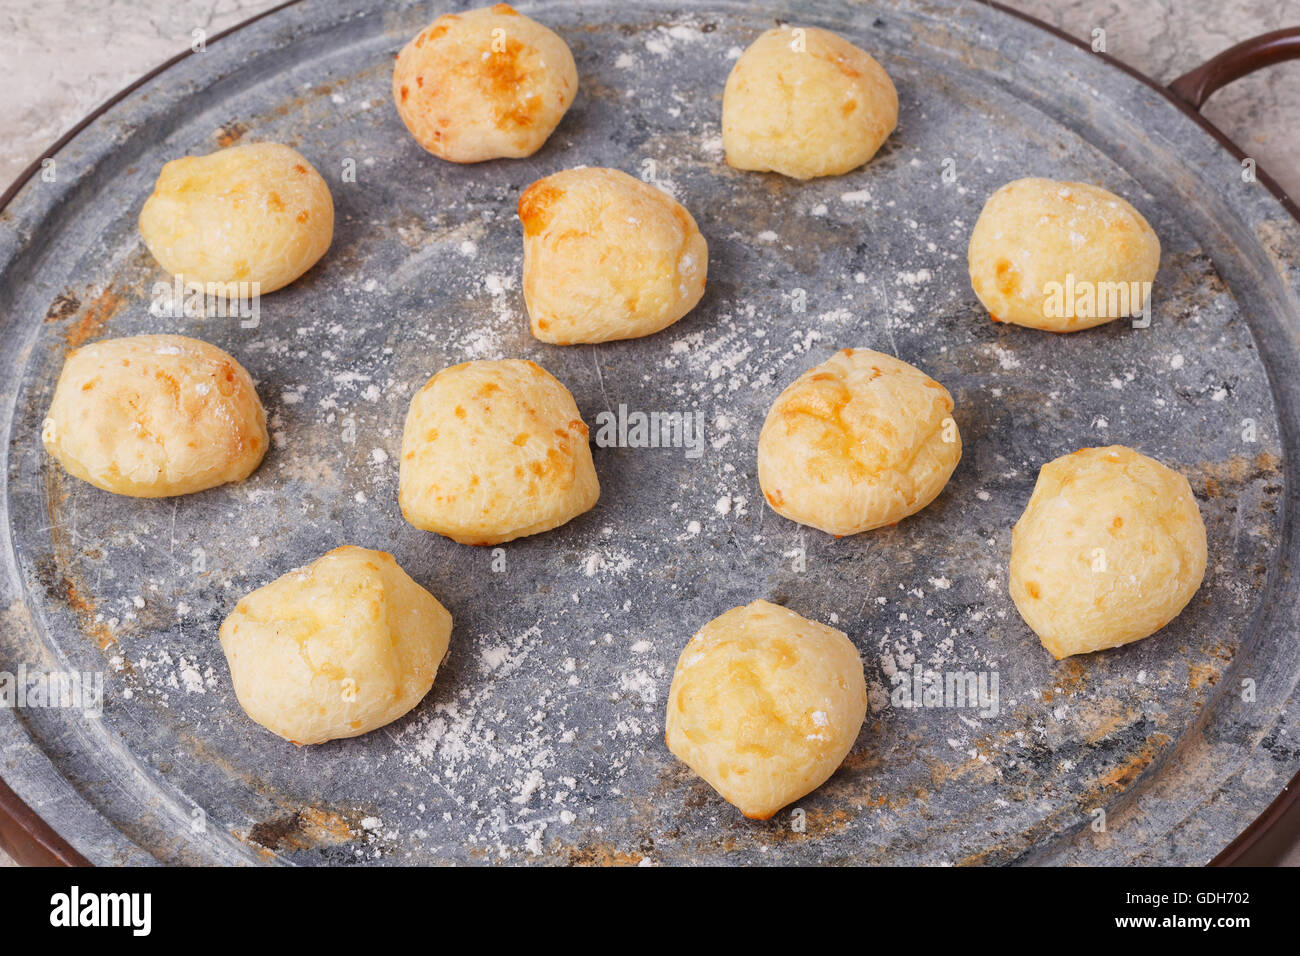 Cooking brazilian snack cheese bread (pao de queijo) on oven-tray. Selective focus Stock Photo